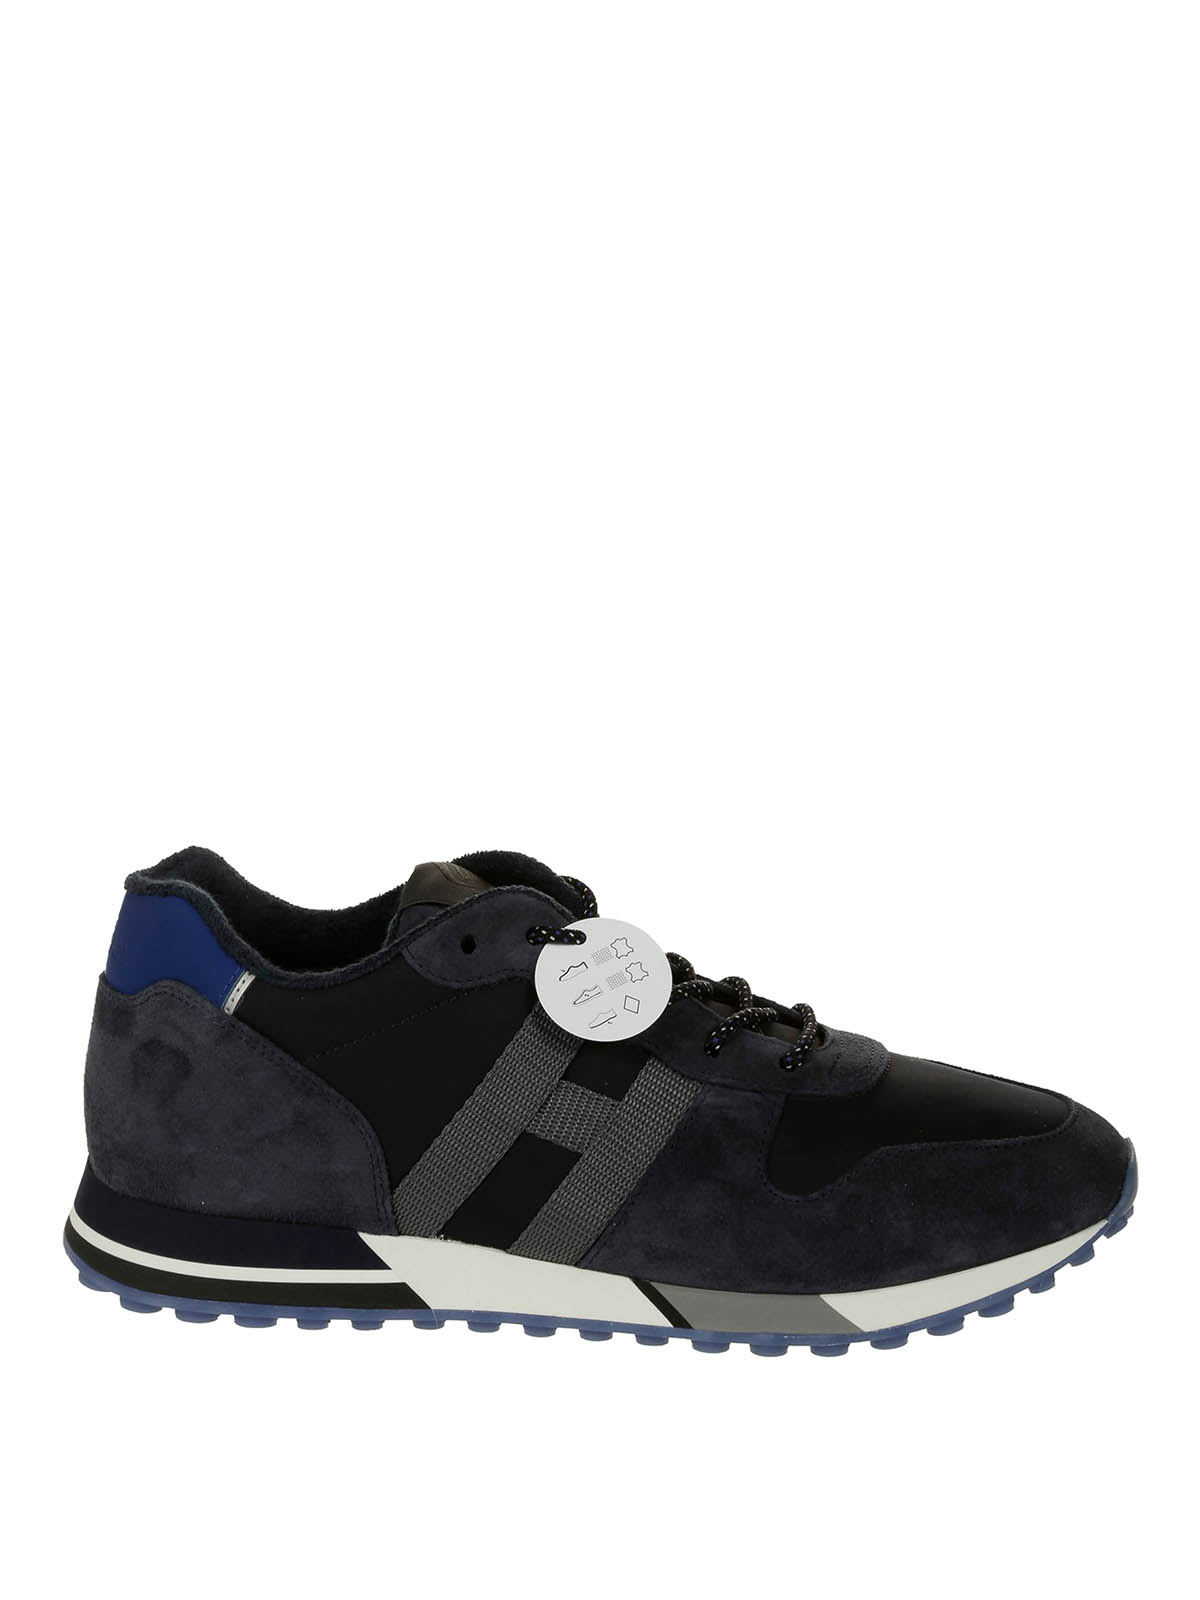 Hogan H383 Sneakers In Dark Blue